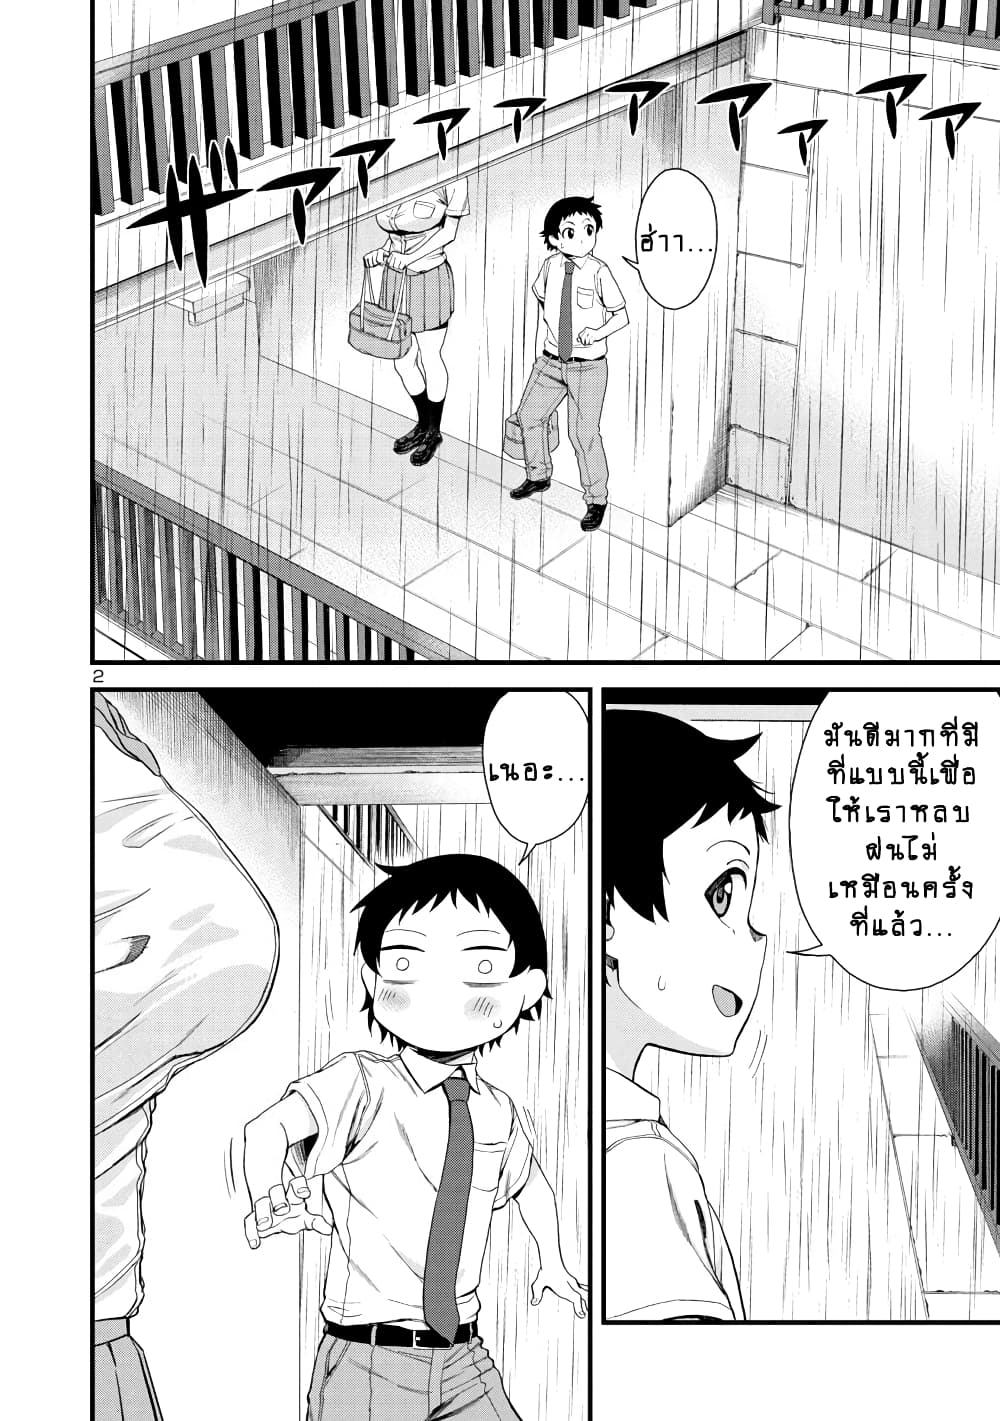 Hitomi-chan Is Shy With Strangers วันๆของน้องฮิโตมิก็เป็นแบบนี้แหล่ะ 20-20